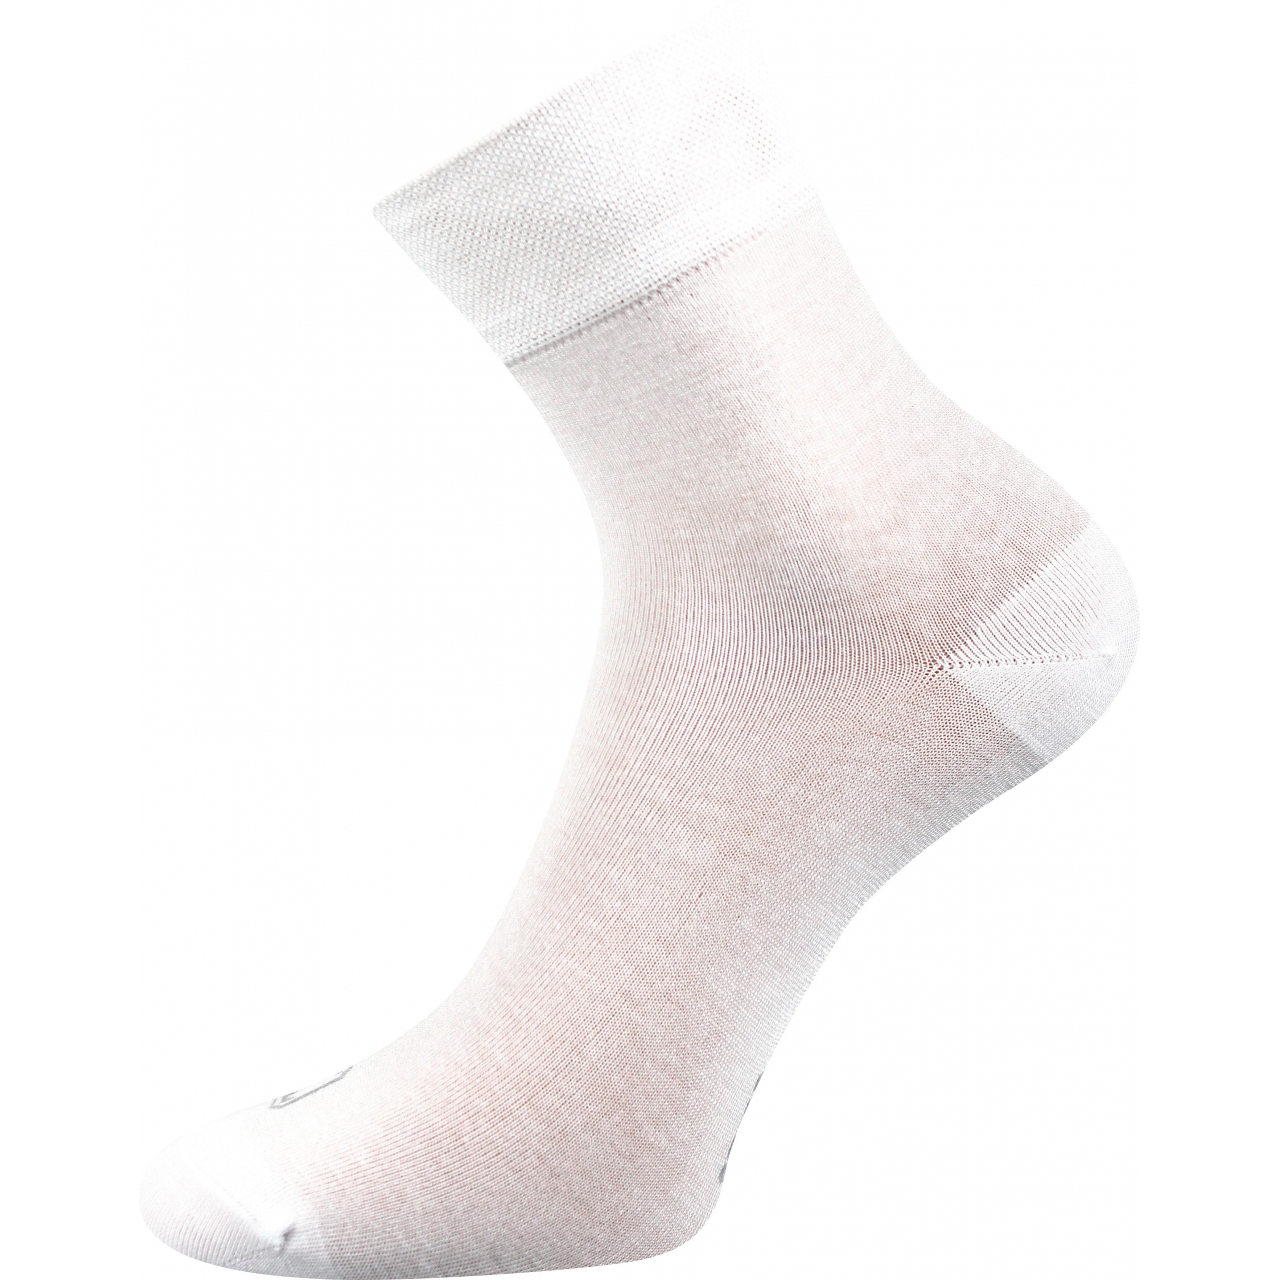 Ponožky unisex bambusové Lonka Demi - bílé, 43-46